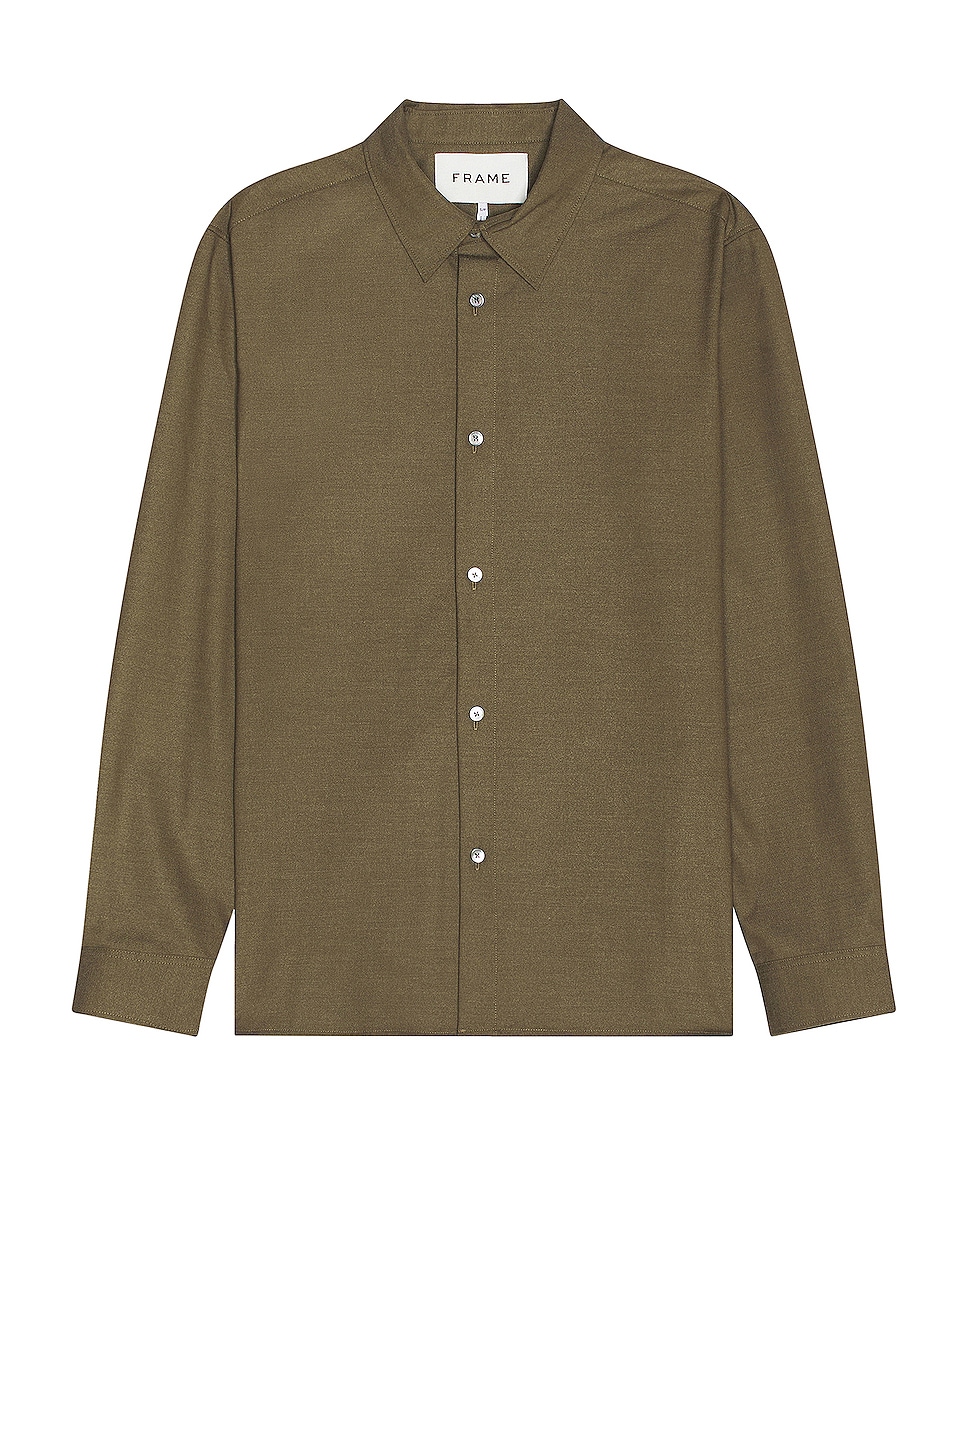 Image 1 of FRAME Brushed Flannel Shirt in Dark Olive